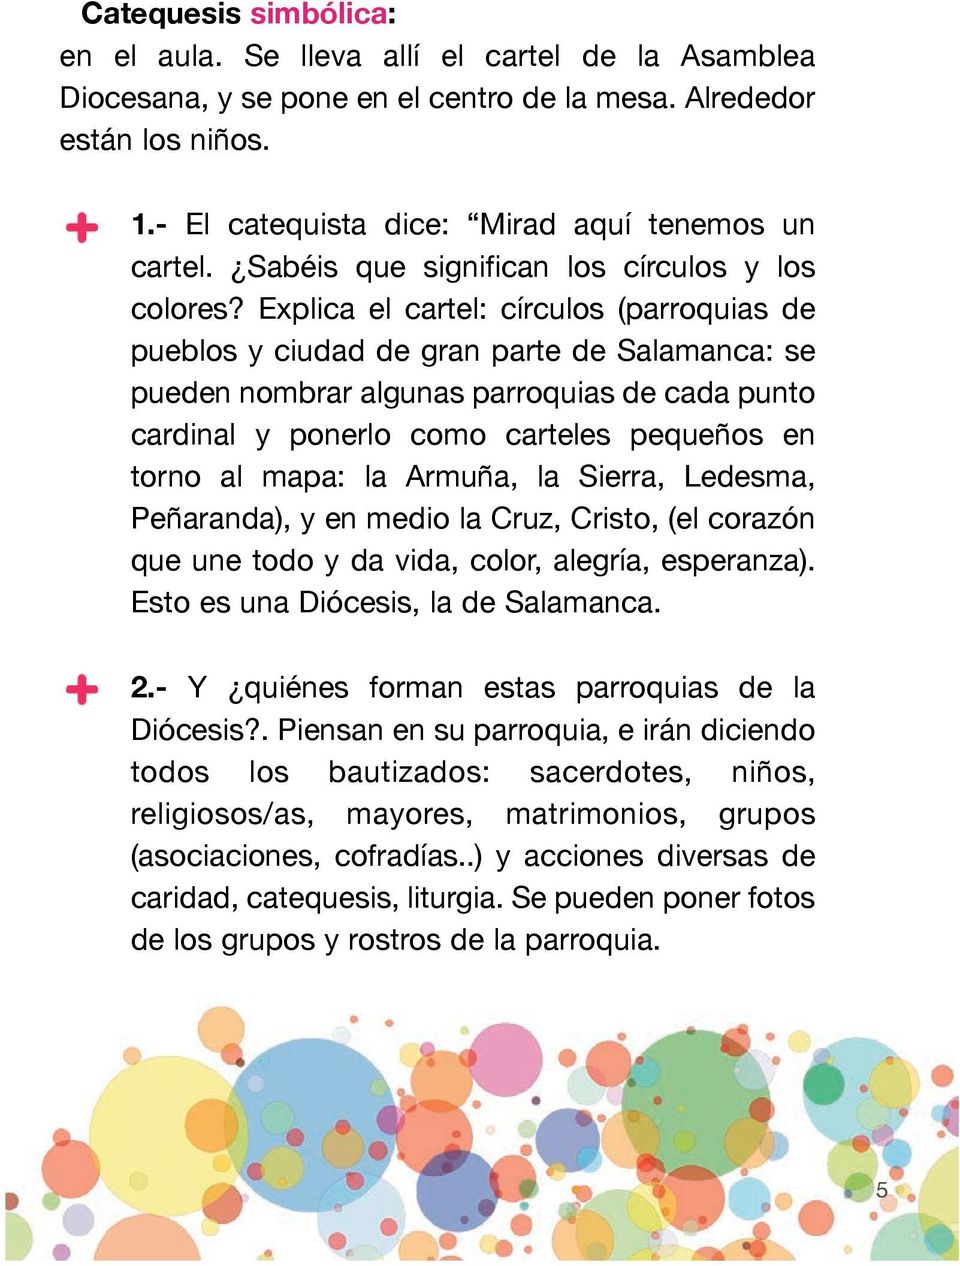 Explica el cartel: círculos (parroquias de pueblos y ciudad de gran parte de Salamanca: se pueden nombrar algunas parroquias de cada punto cardinal y ponerlo como carteles pequeños en torno al mapa: